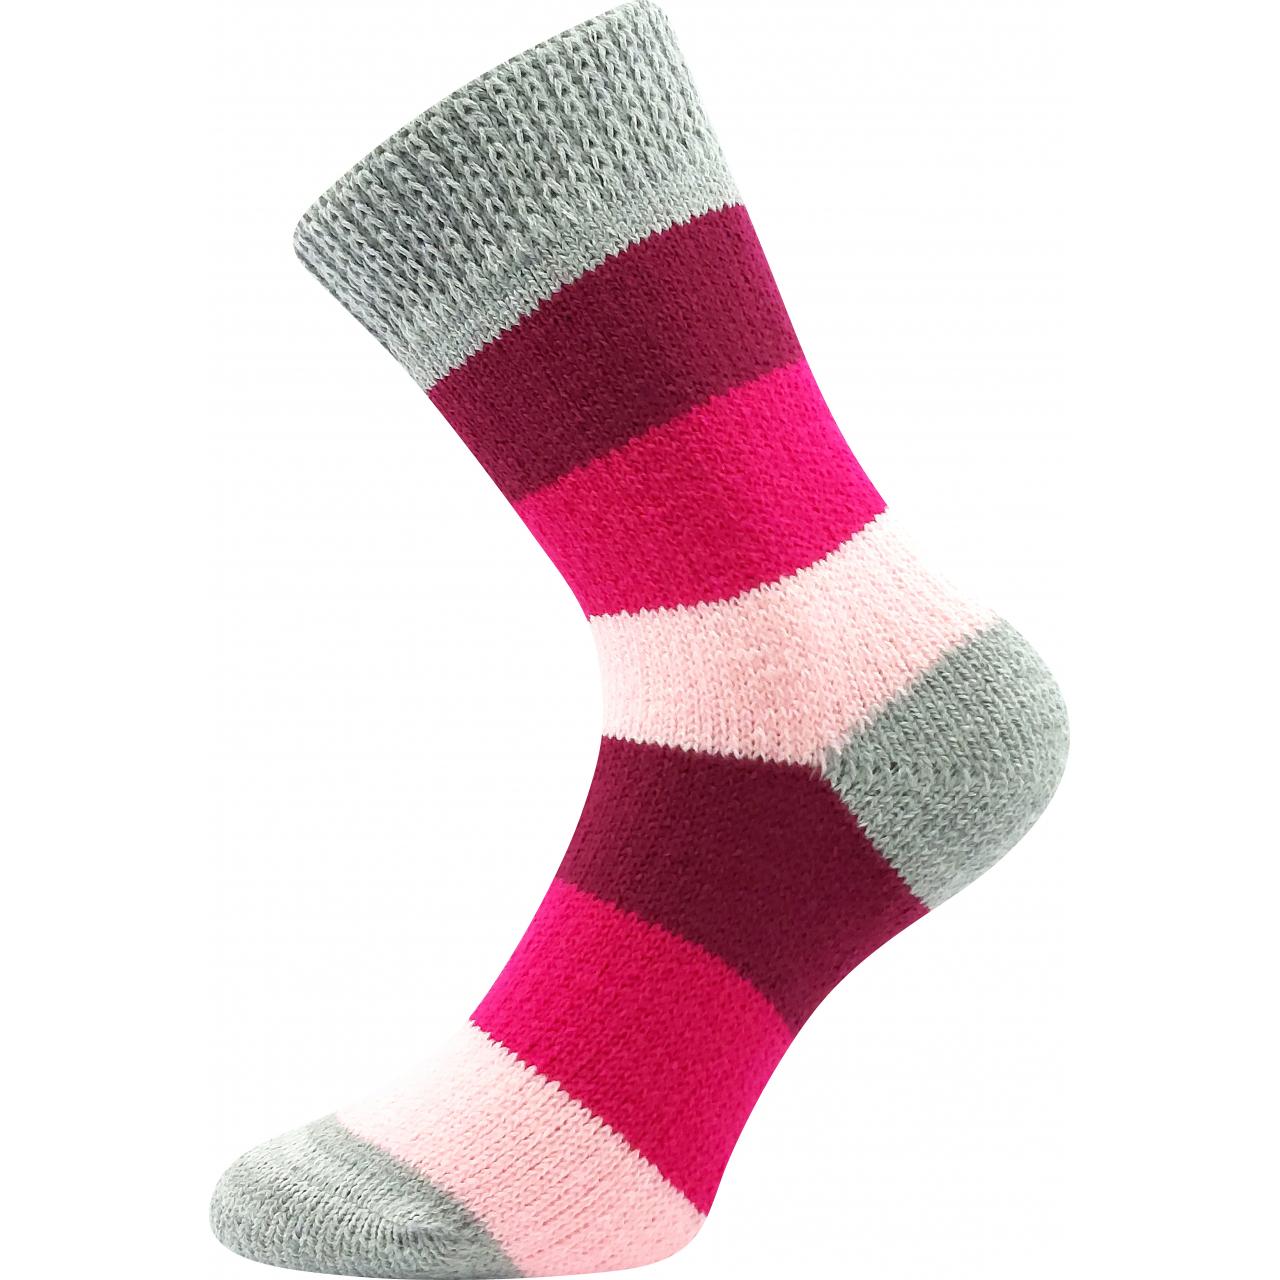 Ponožky spací unisex Boma Spací Pruh - růžové-šedé, 35-38